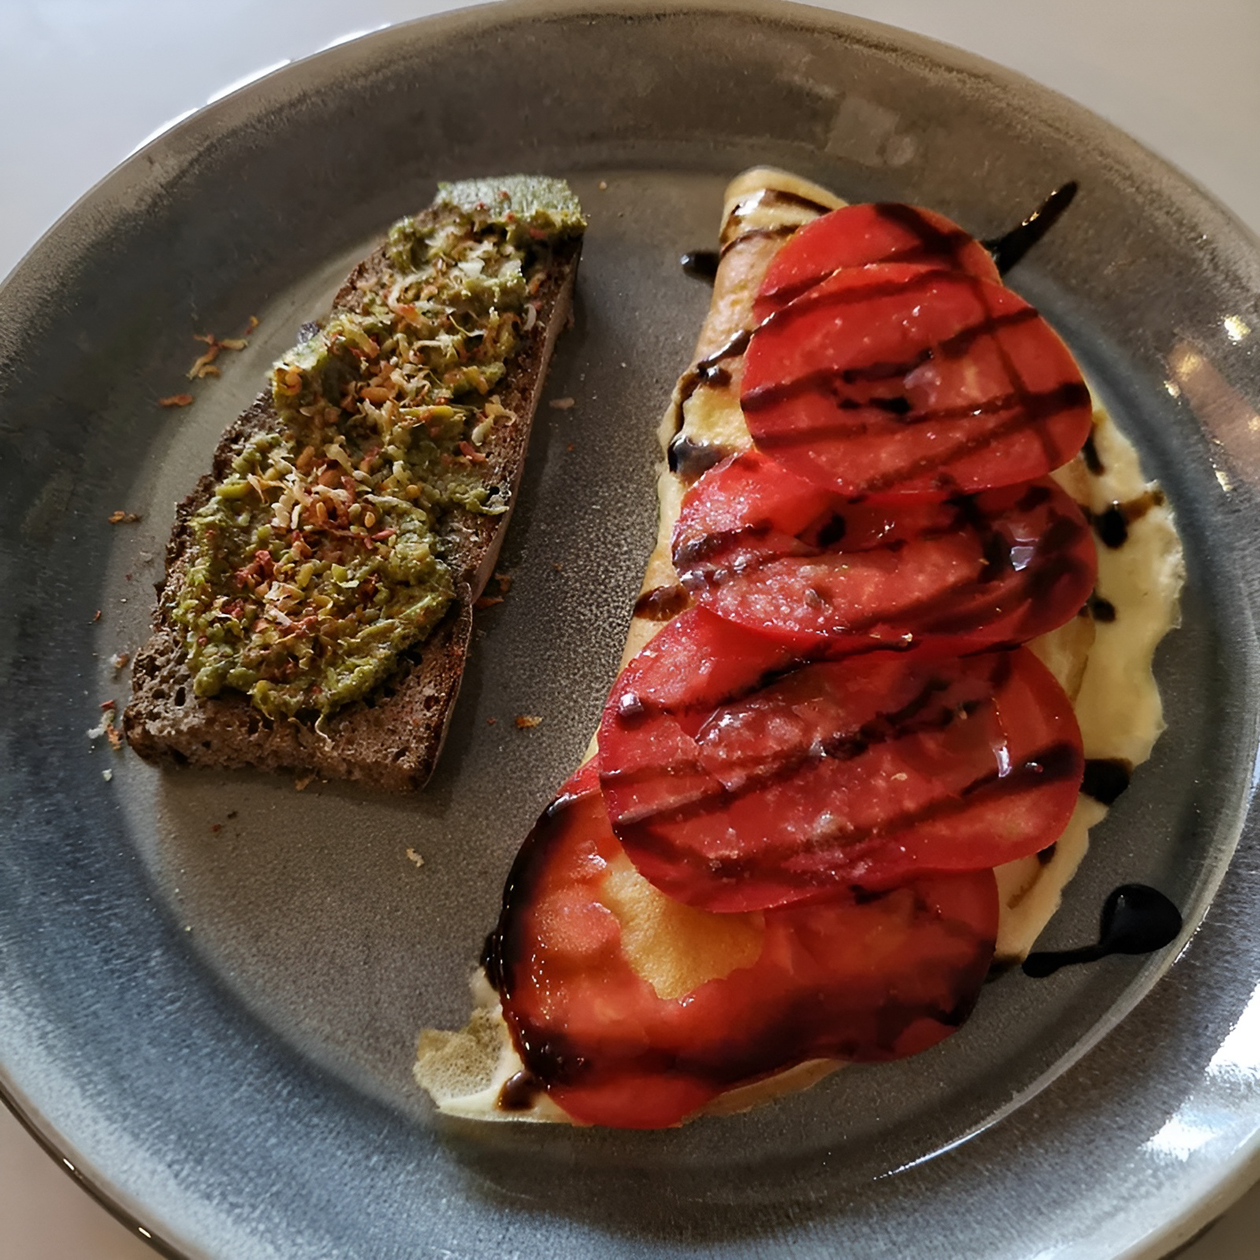 Один из моих завтраков: омлет с томатами и бутерброд с тертым сыром и соусом песто. Выглядит красиво и задает настроение на весь день